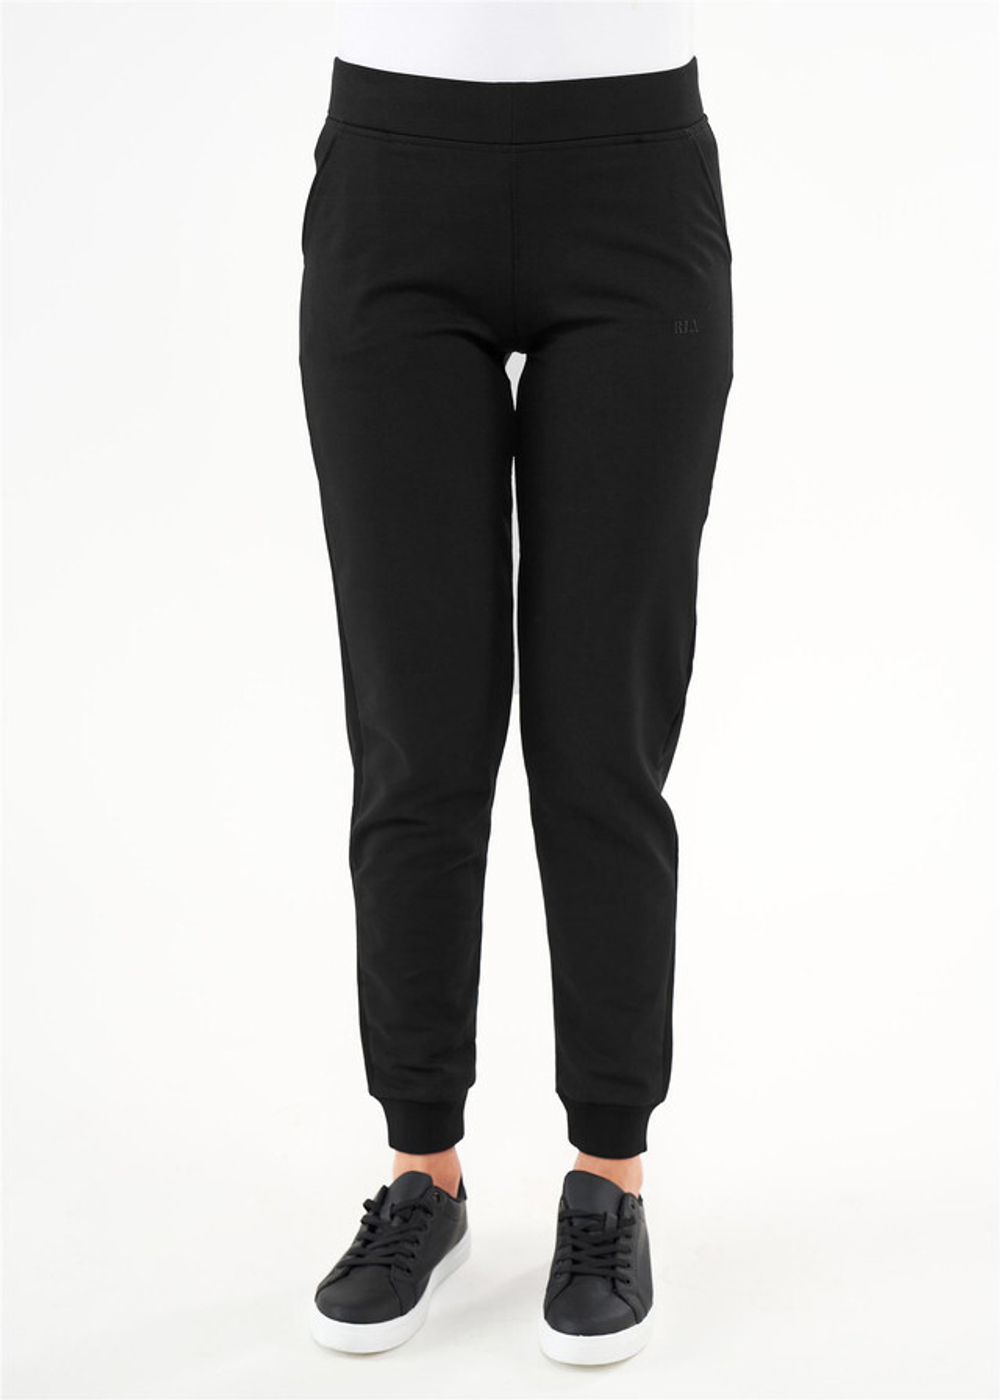 RELAX MODE / Спортивные брюки женские штаны спортивные женские трико - 40055